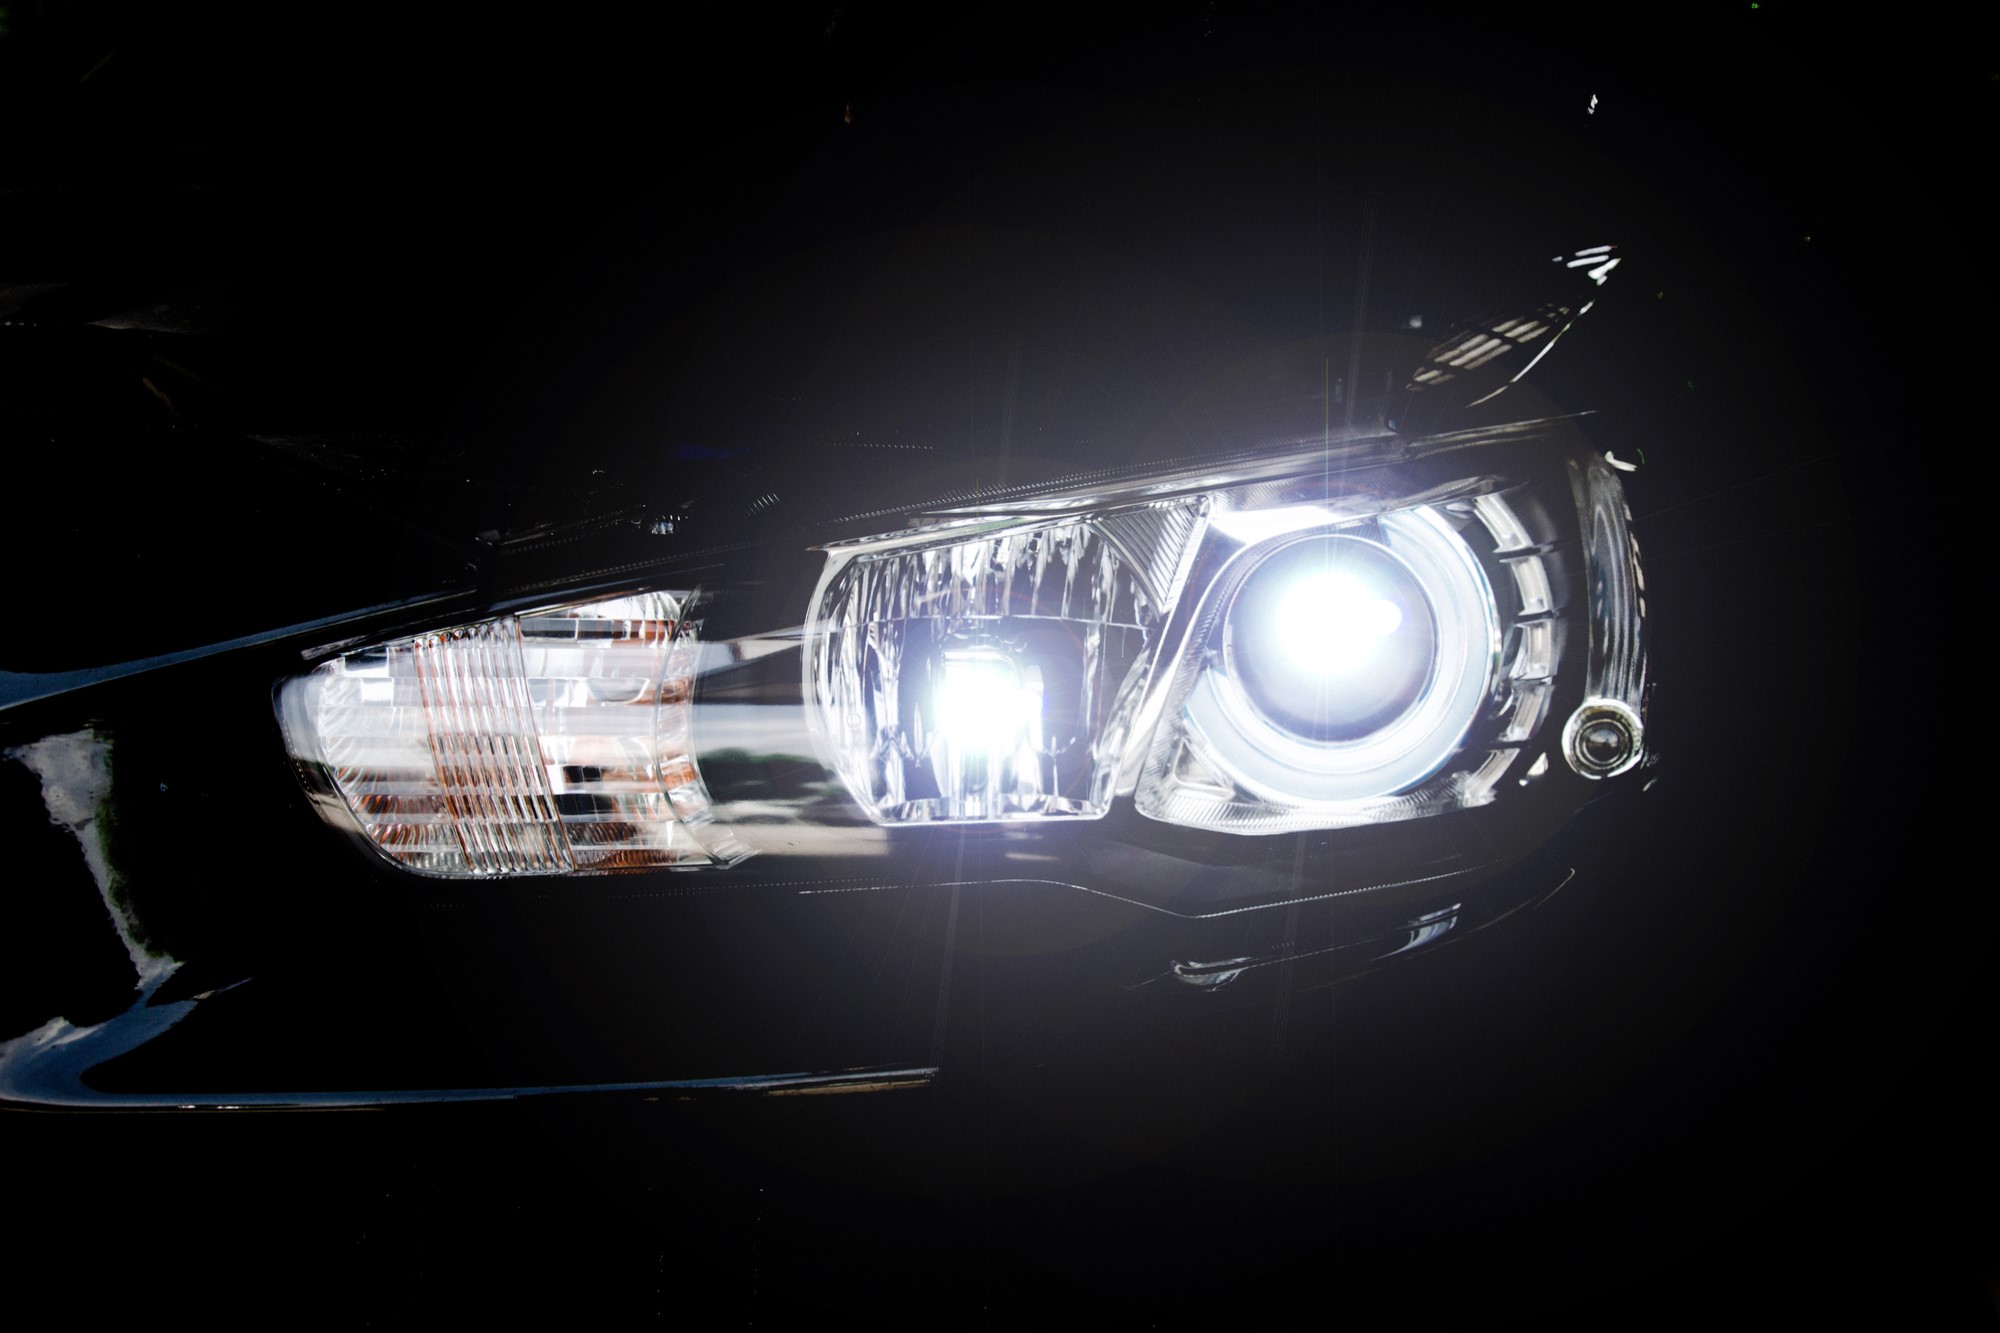 close-up photograph of car headlight